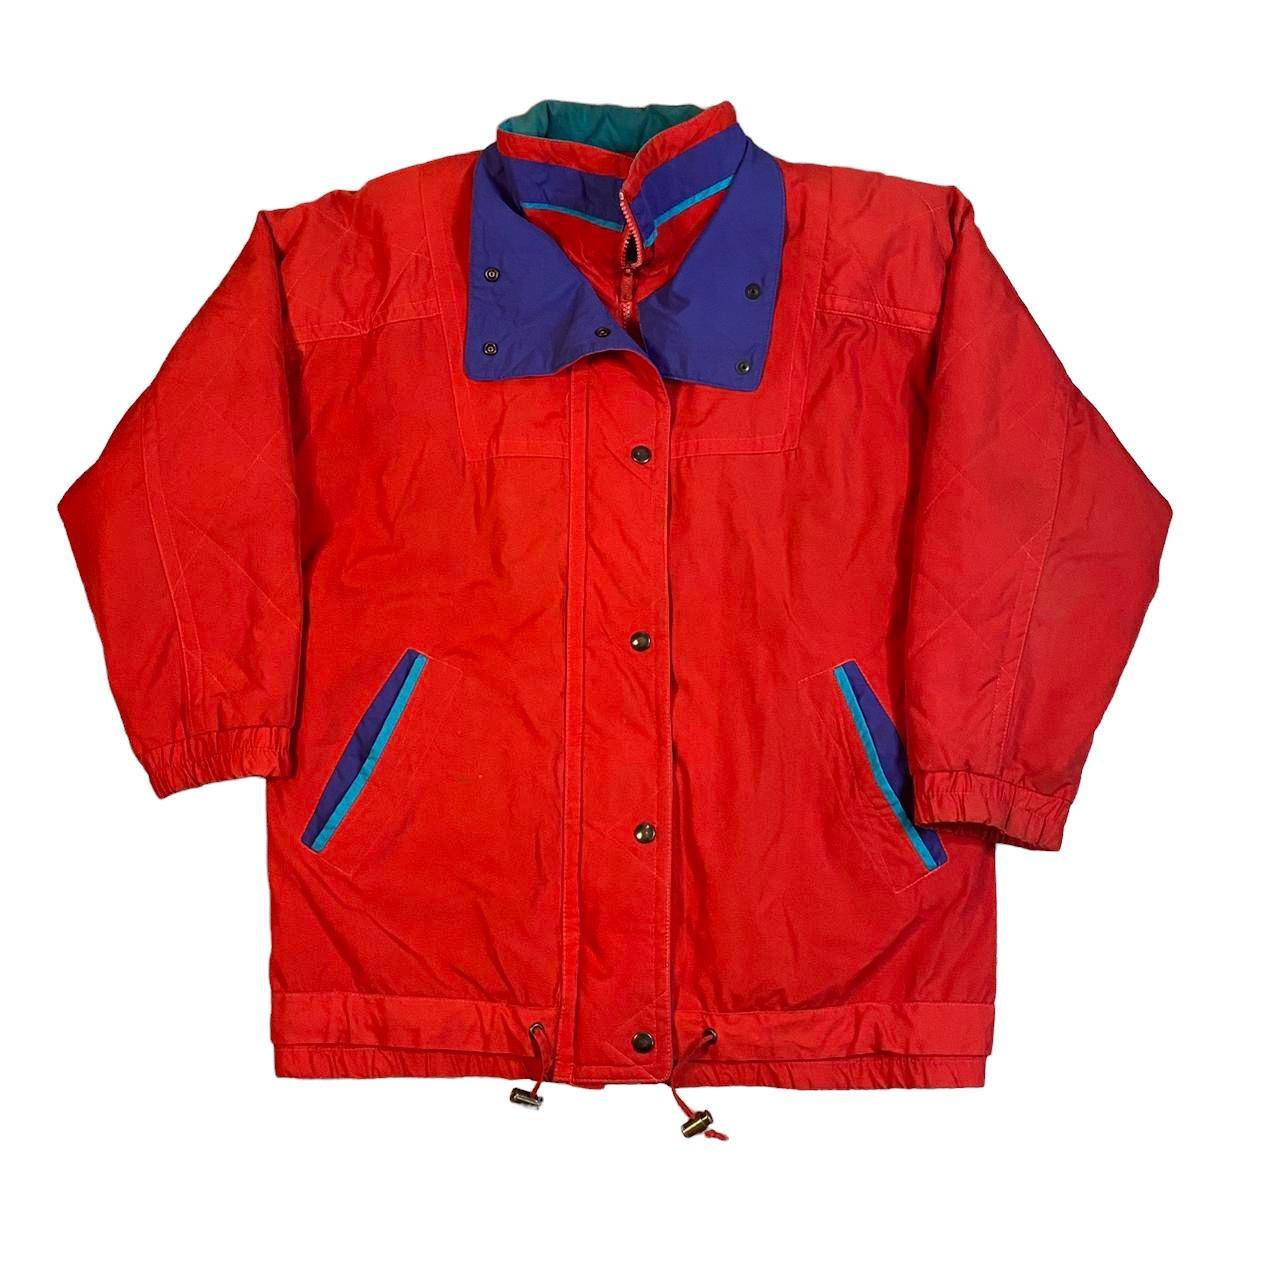 Vintage 1980’s London Fog Parka Style jacket with 3M... - Depop